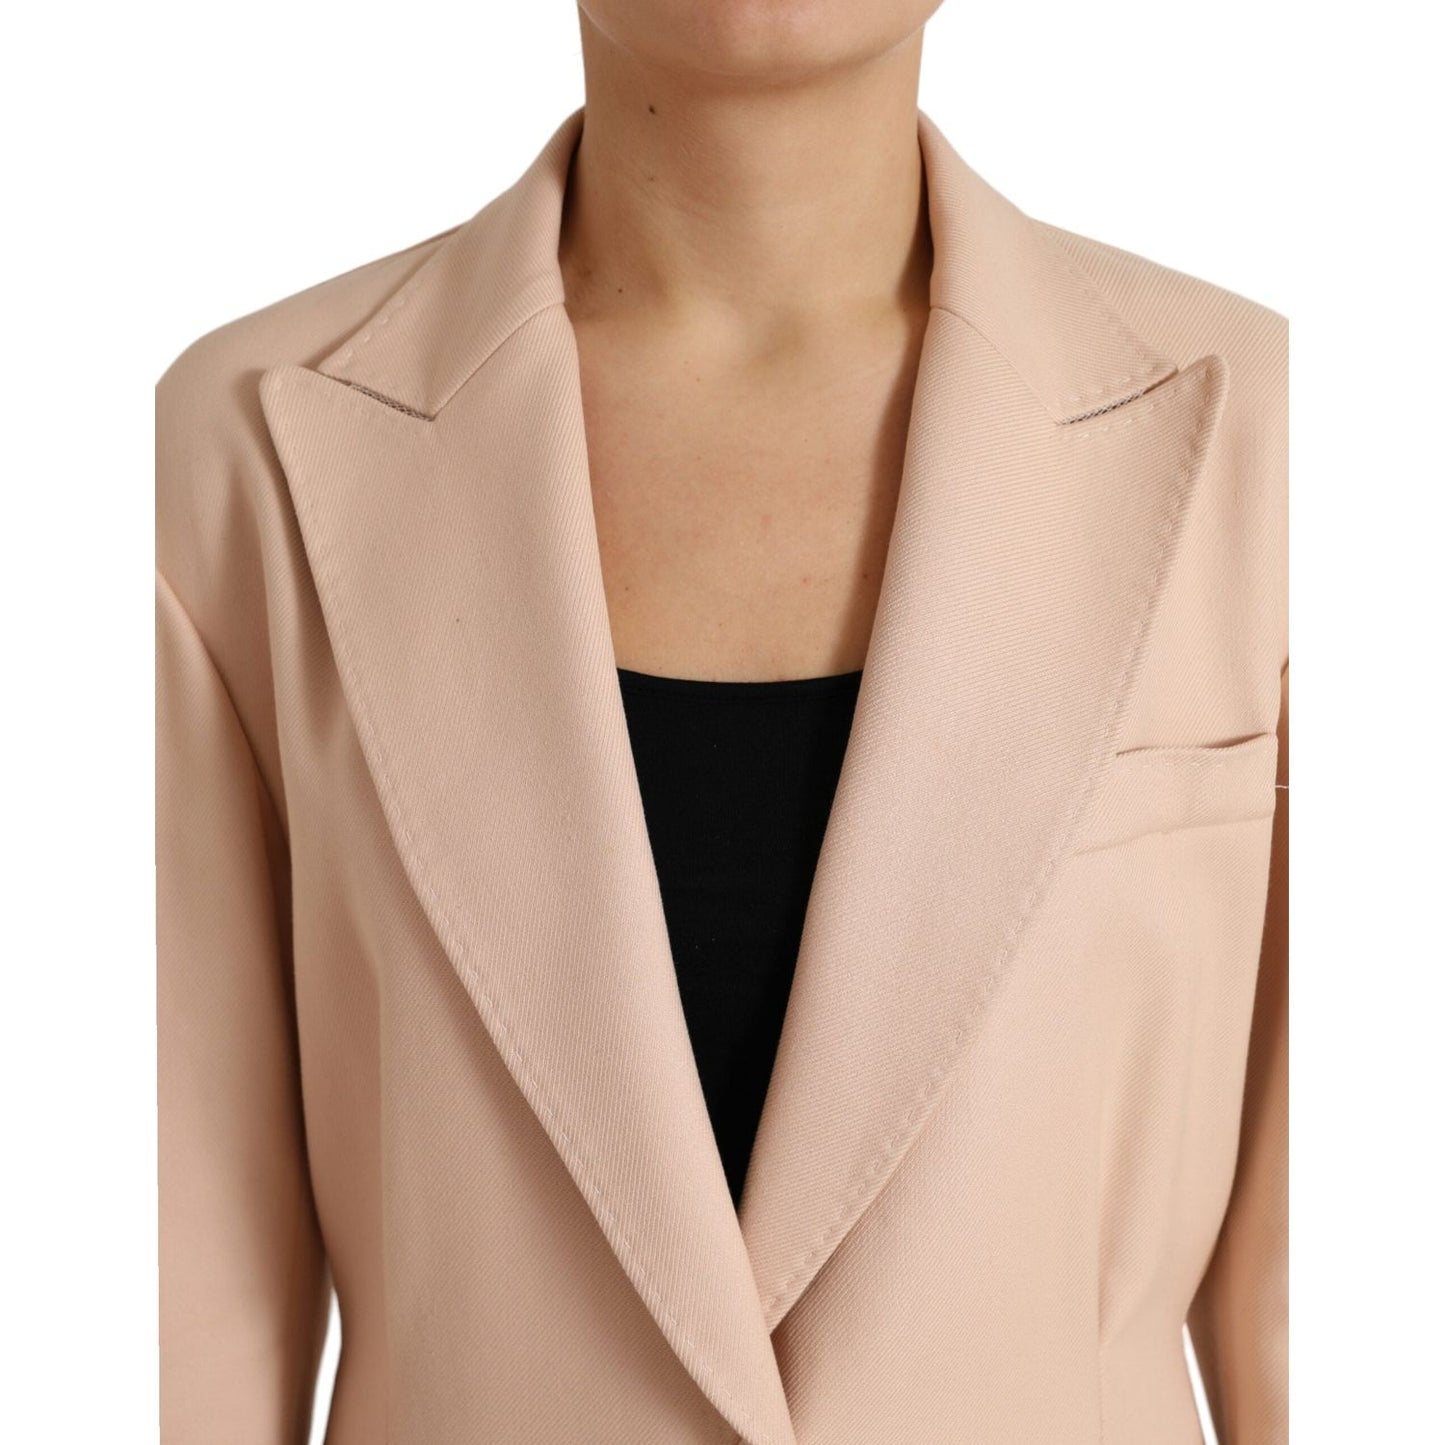 Dolce & Gabbana Elegant Beige Single-Breasted Trench Coat beige-cotton-single-breasted-long-coat-jacket 465A9168-BG-scaled-9d9fbe07-ade.jpg